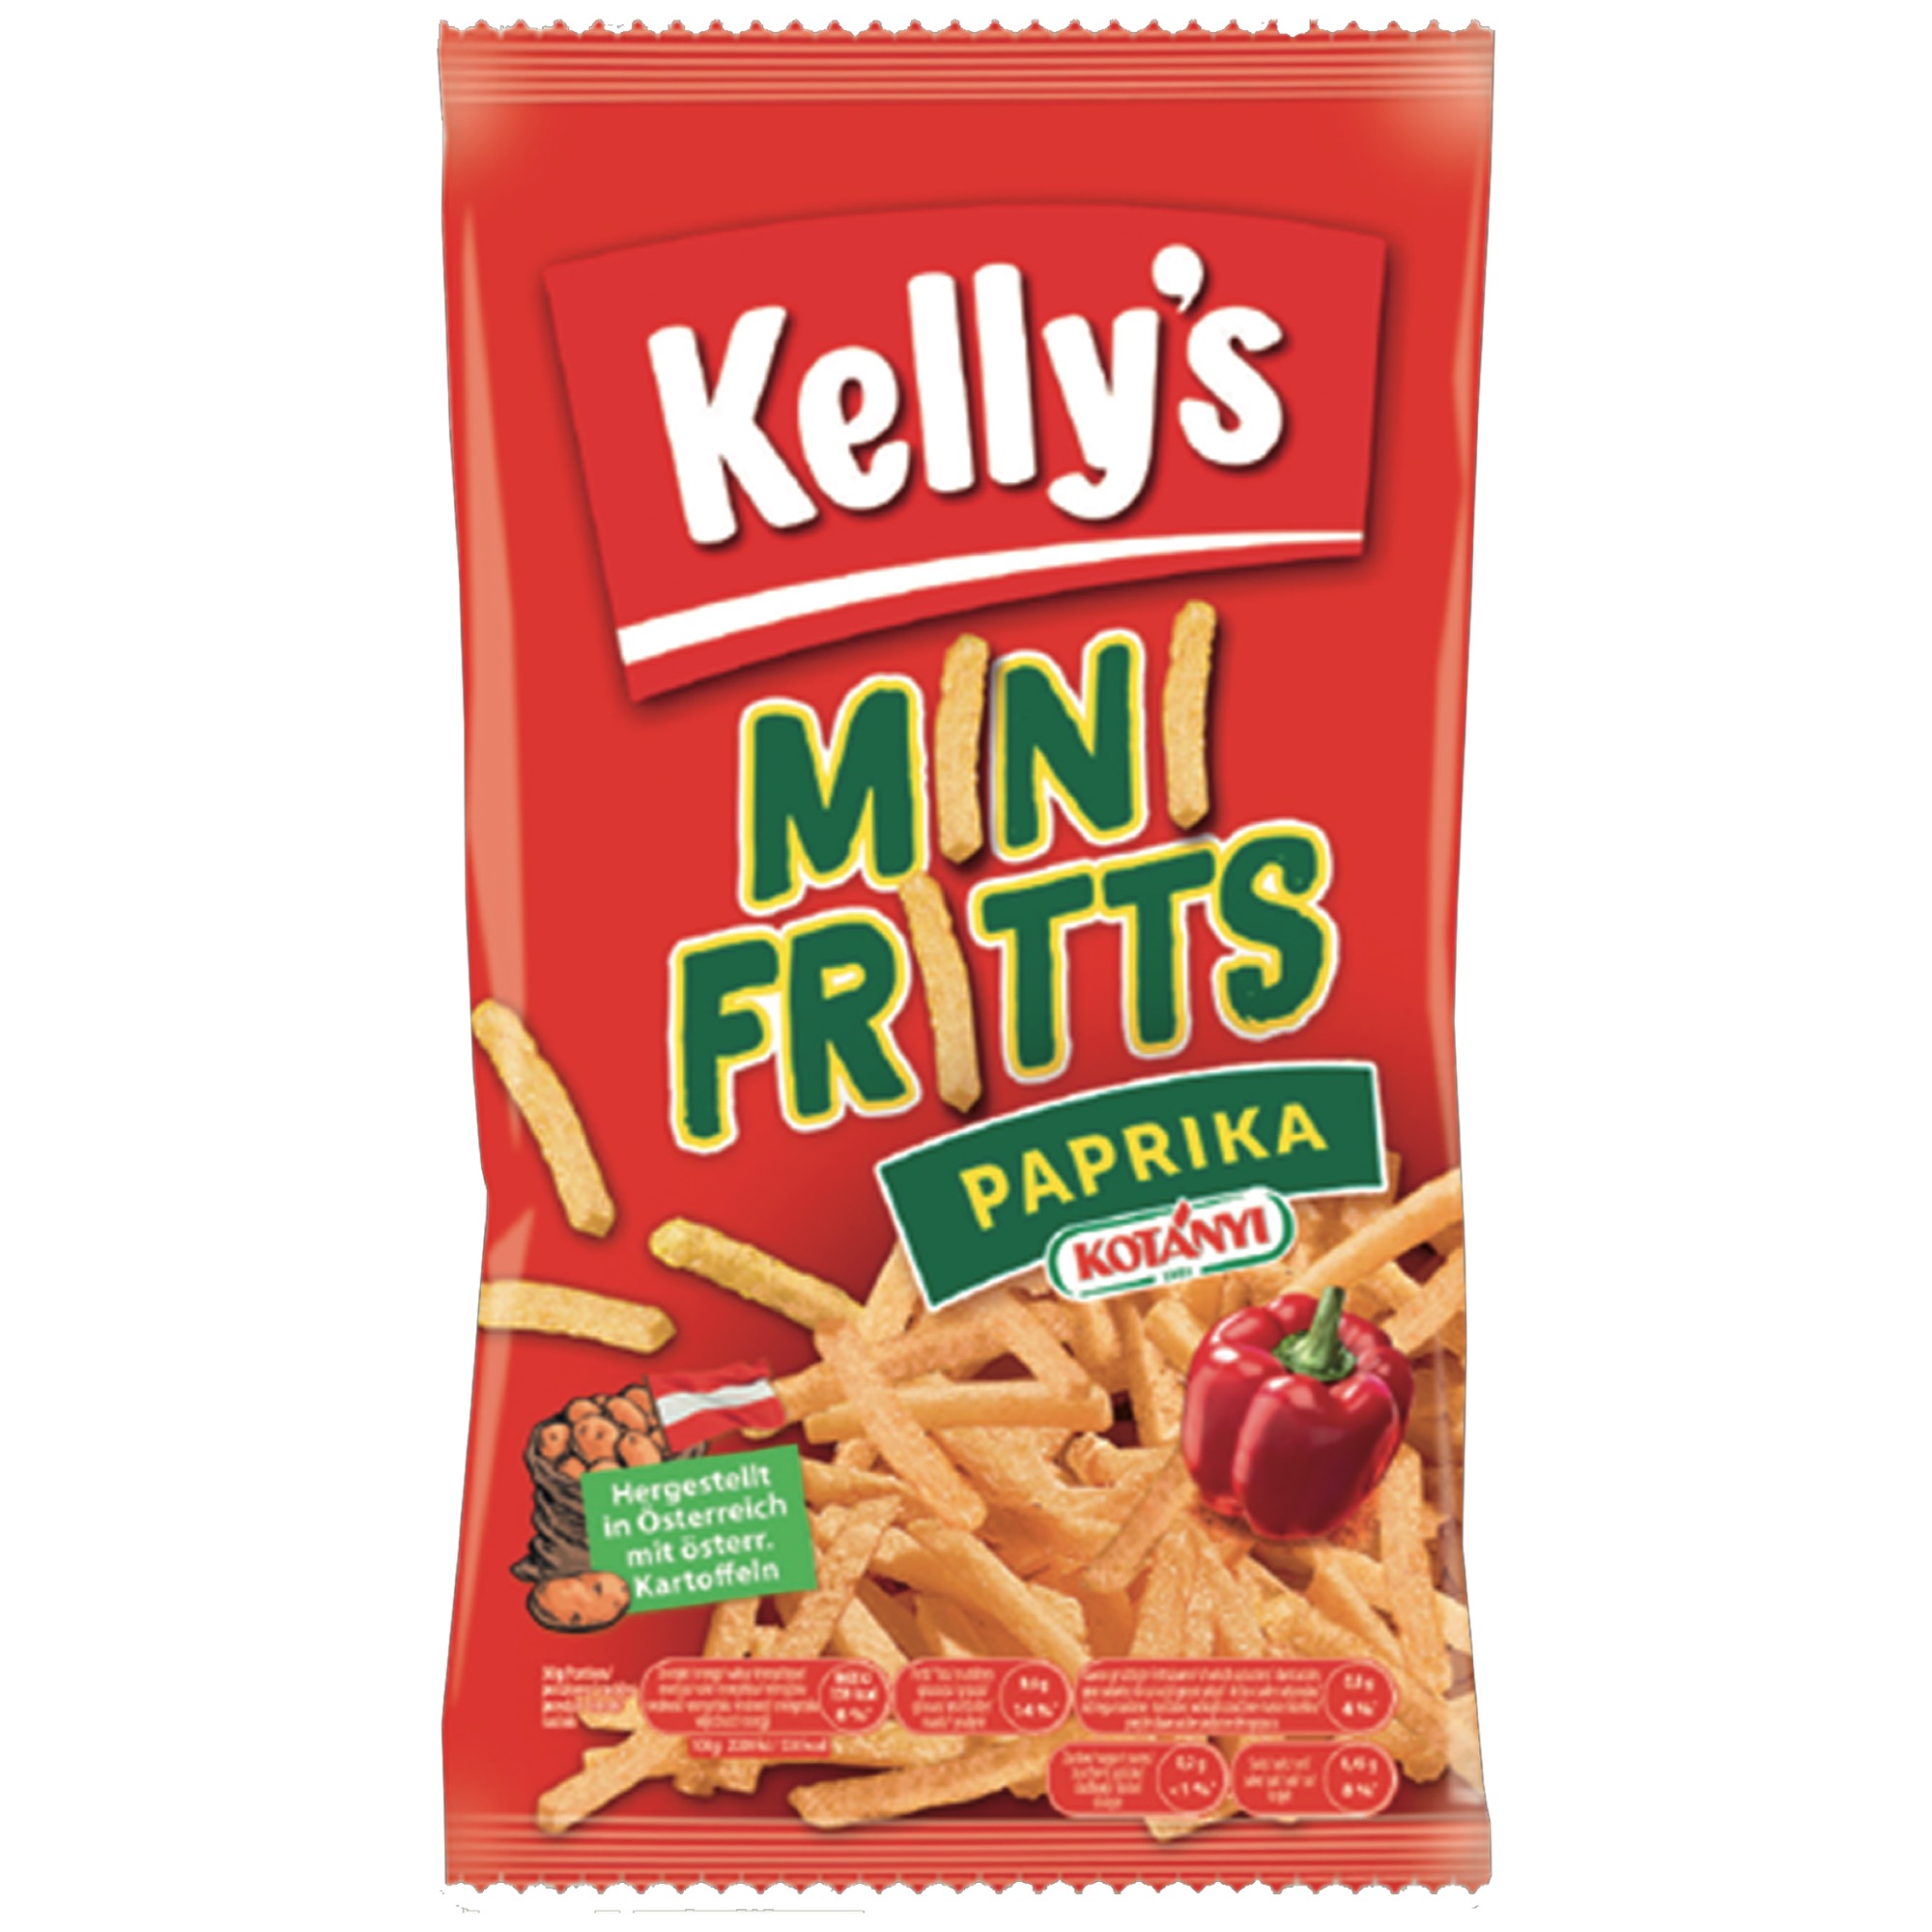 Kelly Mini Fritts 80g, Paprika